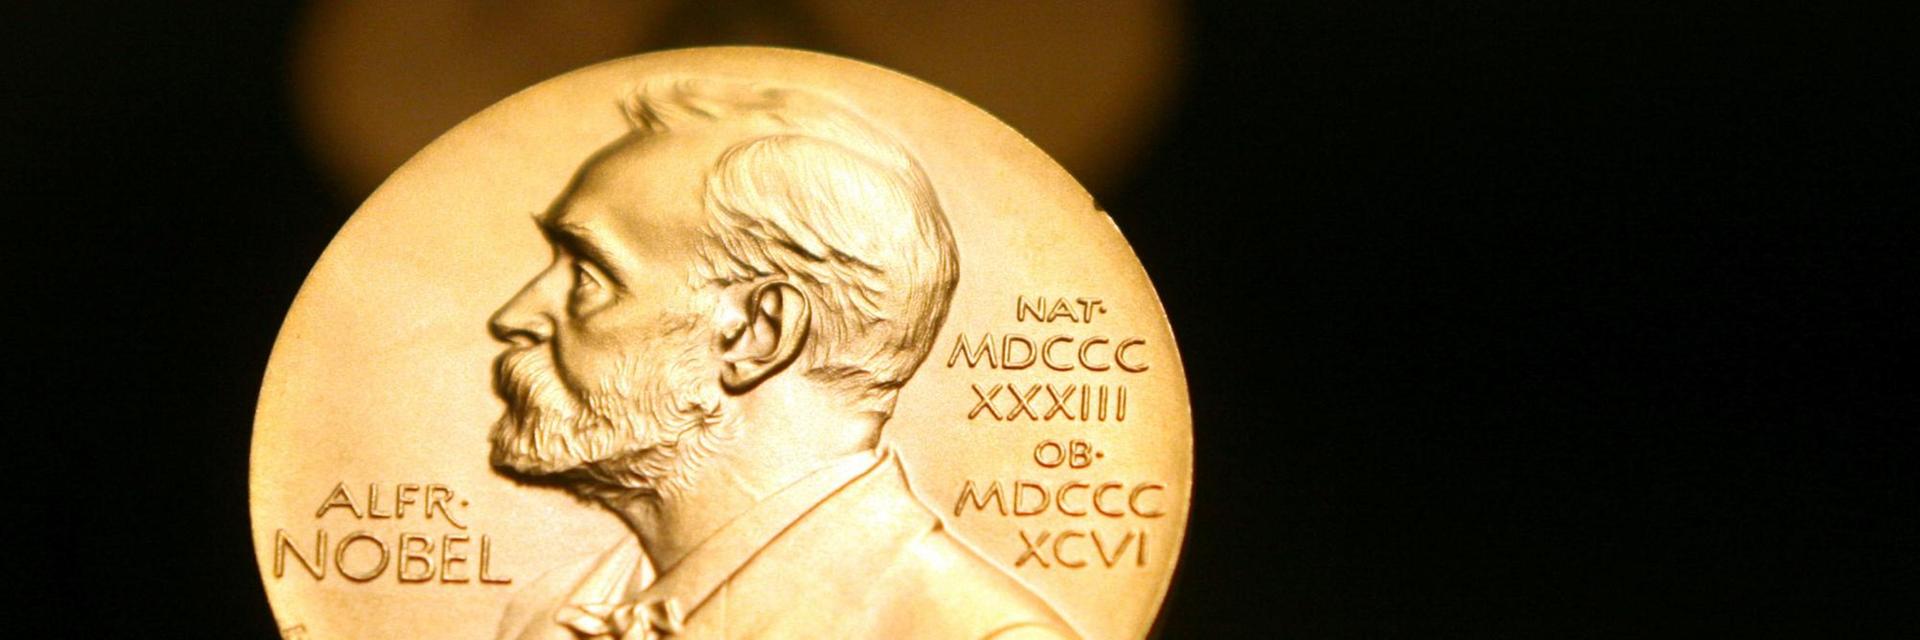 Schweden, Stockholm: Eine Medaille mit dem Konterfei von Alfred Nobel ist im Nobel Museum zu sehen.